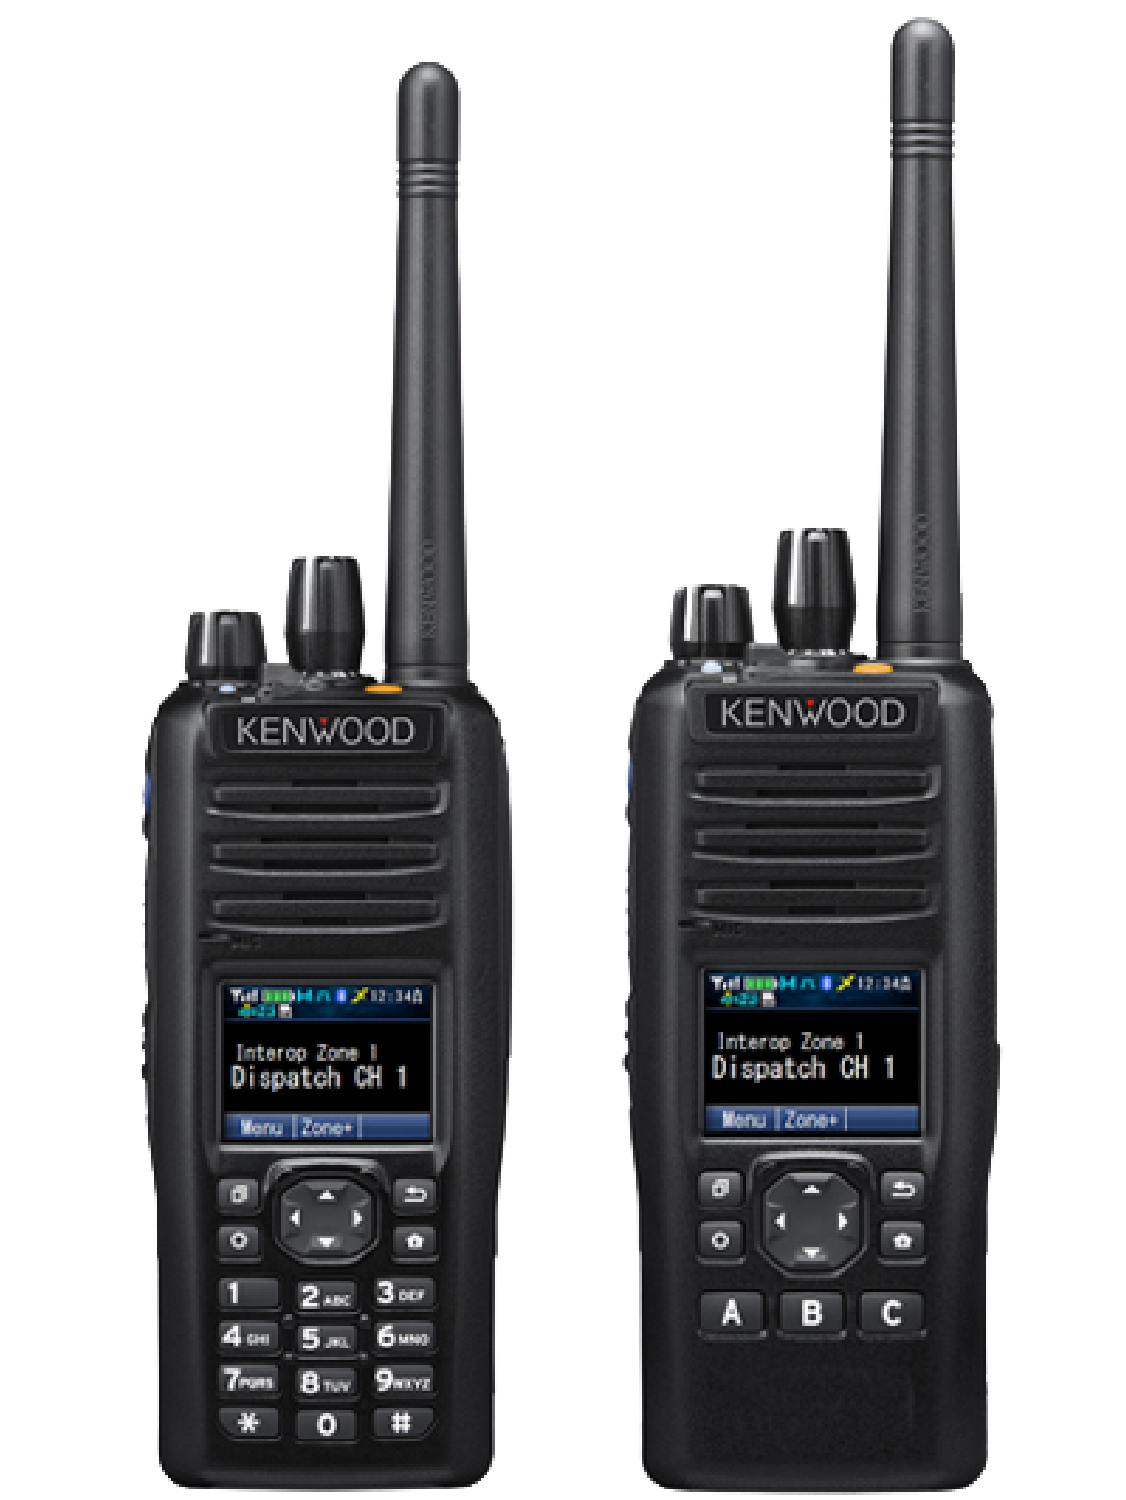 Kenwood NX-5200